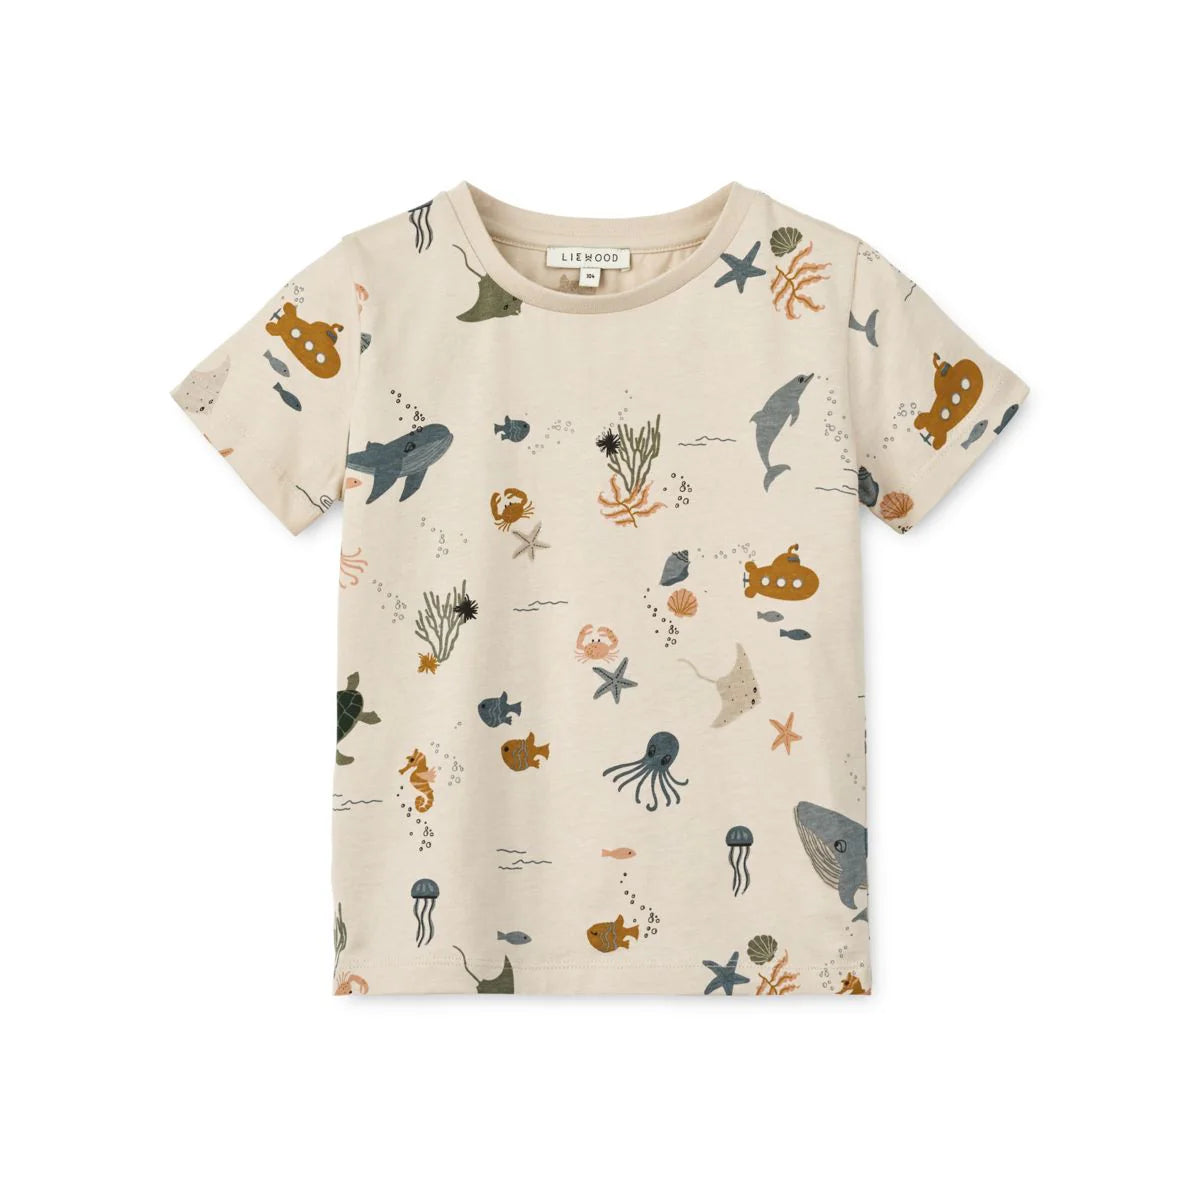 Das weiche und atmungsaktive Baby-Shirt Apia ist ein echter Klassiker im Kleiderschrank und ein unkomplizierter Alltagsstyle für dein Baby.